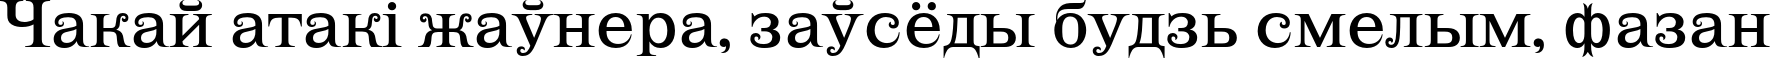 Пример написания шрифтом LehmannC текста на белорусском